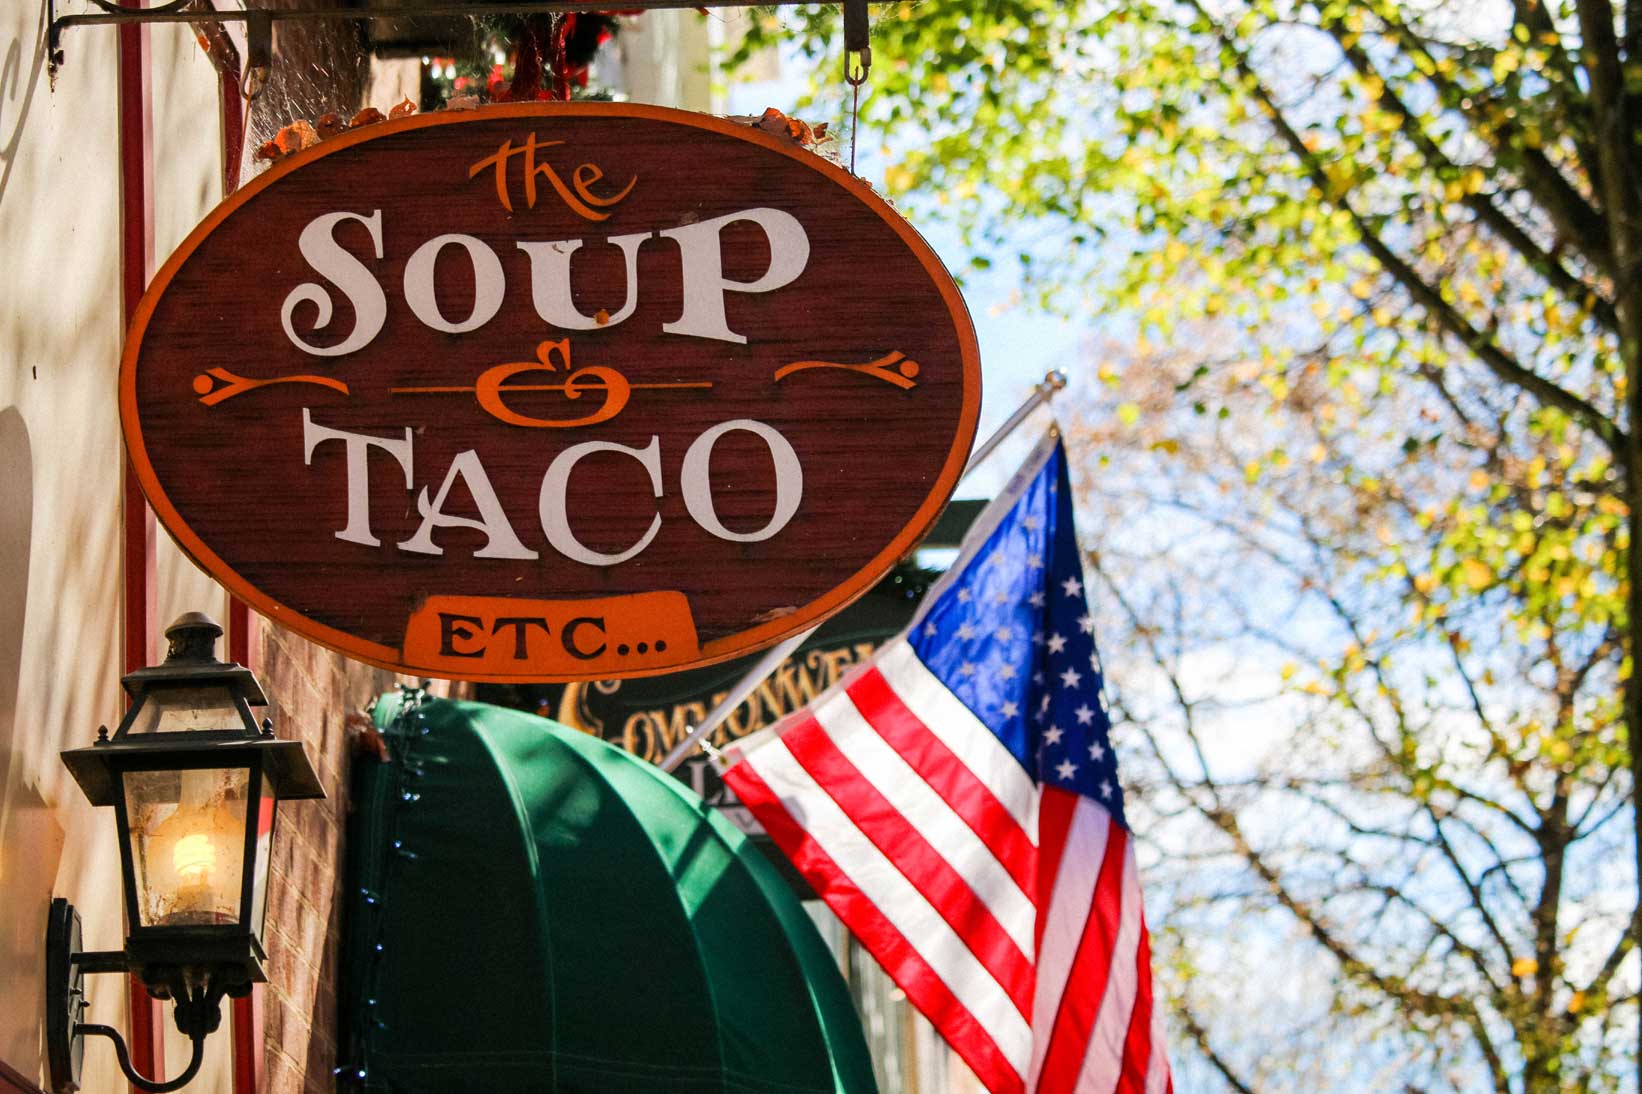 Soup & Taco in Fredericksburg, VA